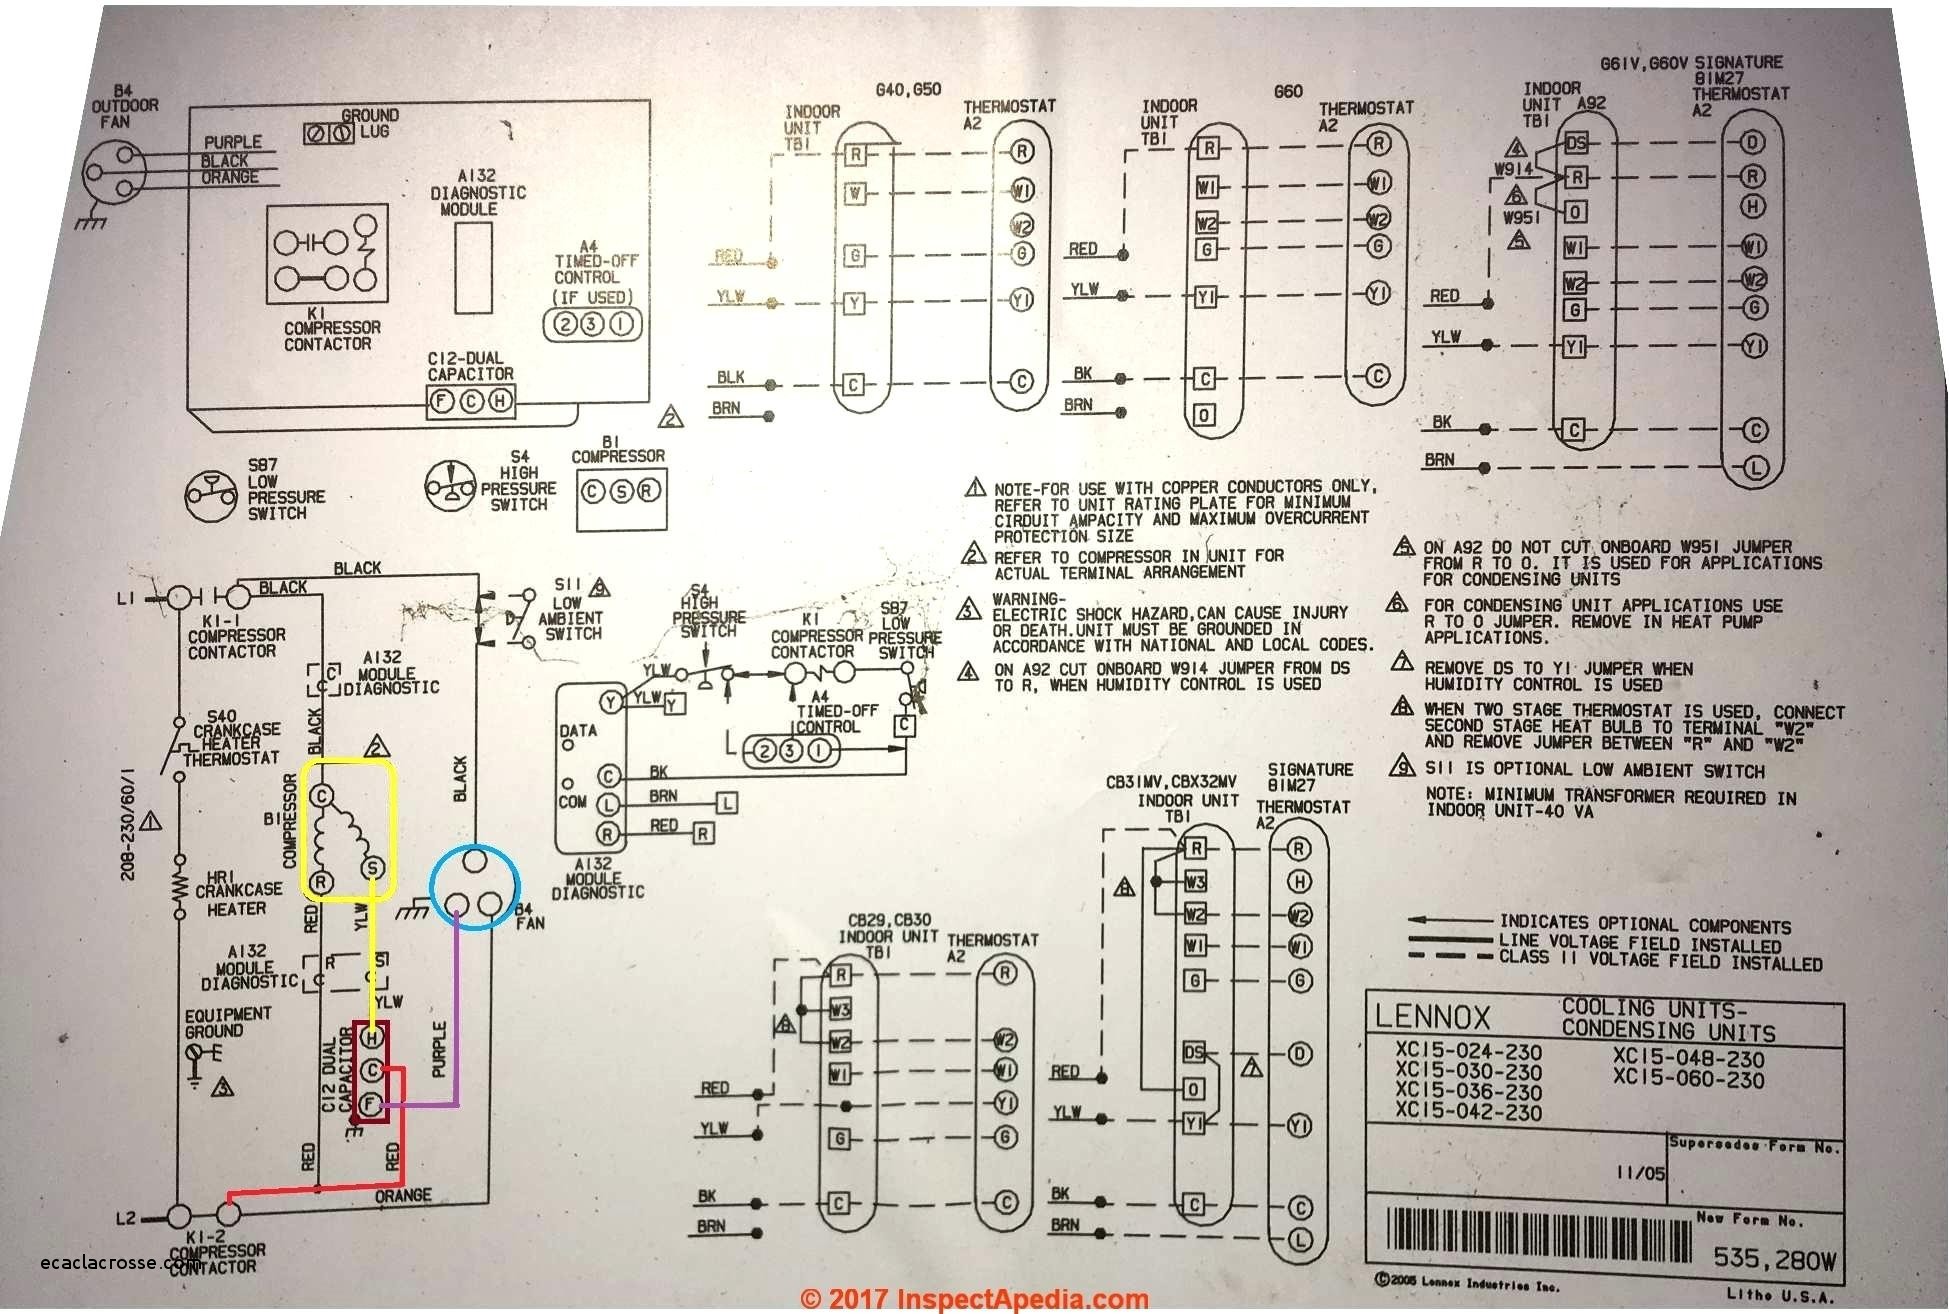 sanborn air pressor centrifugal switch with wiring diagram rh 33 coding munity de Air pressor 220V Wiring